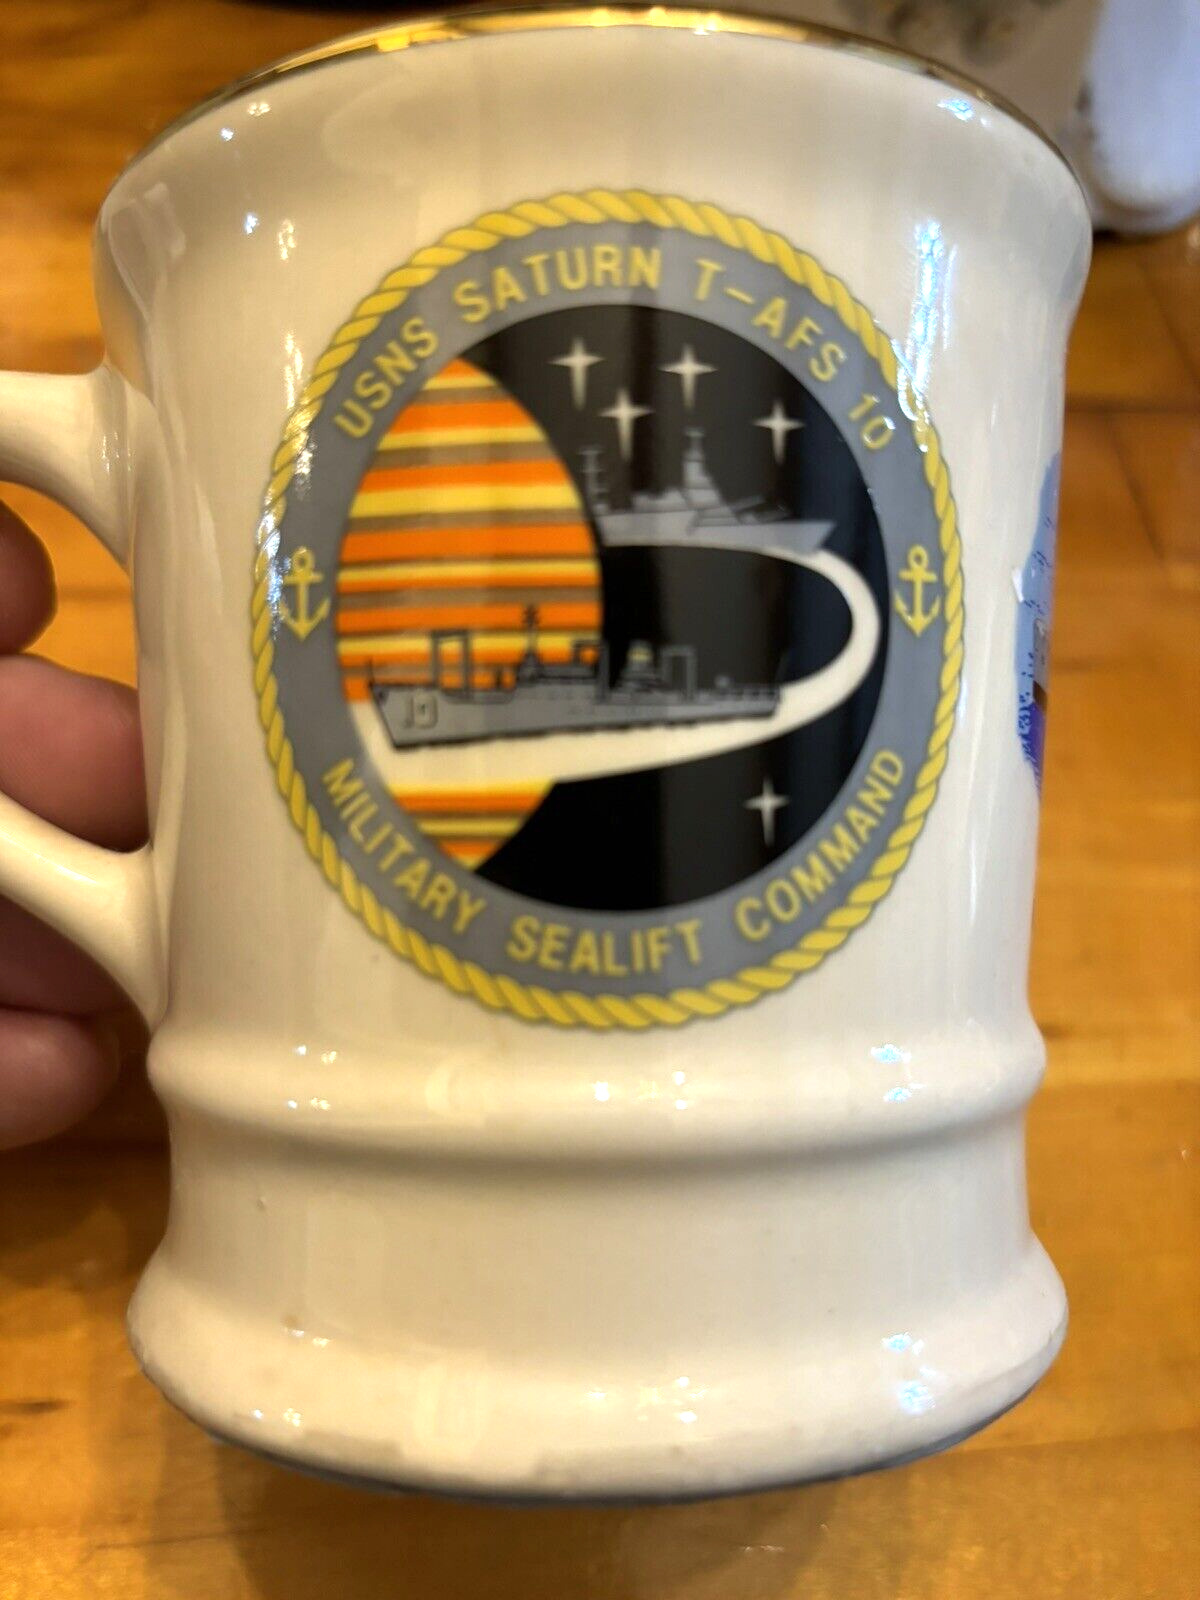 Vintage USNS Saturn T-AFS 10 Military Sealift Command US Navy Coffee Mug